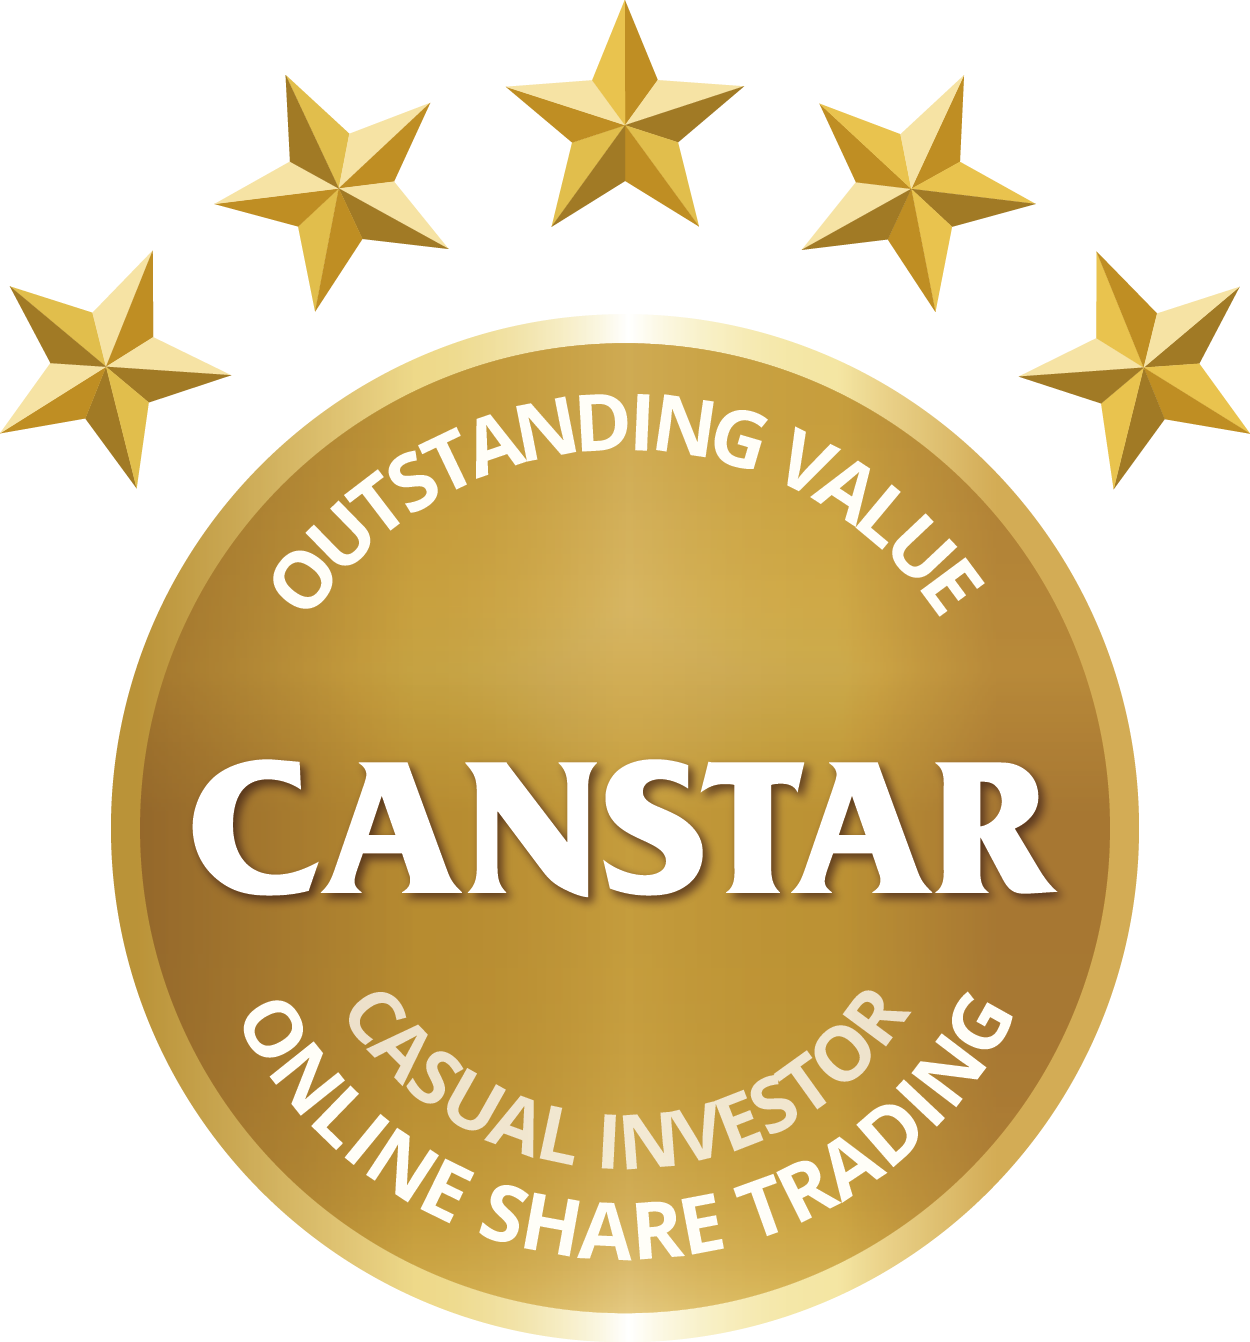 Prix Canstar - Rentabilité exceptionnelle pour investisseur occasionnel